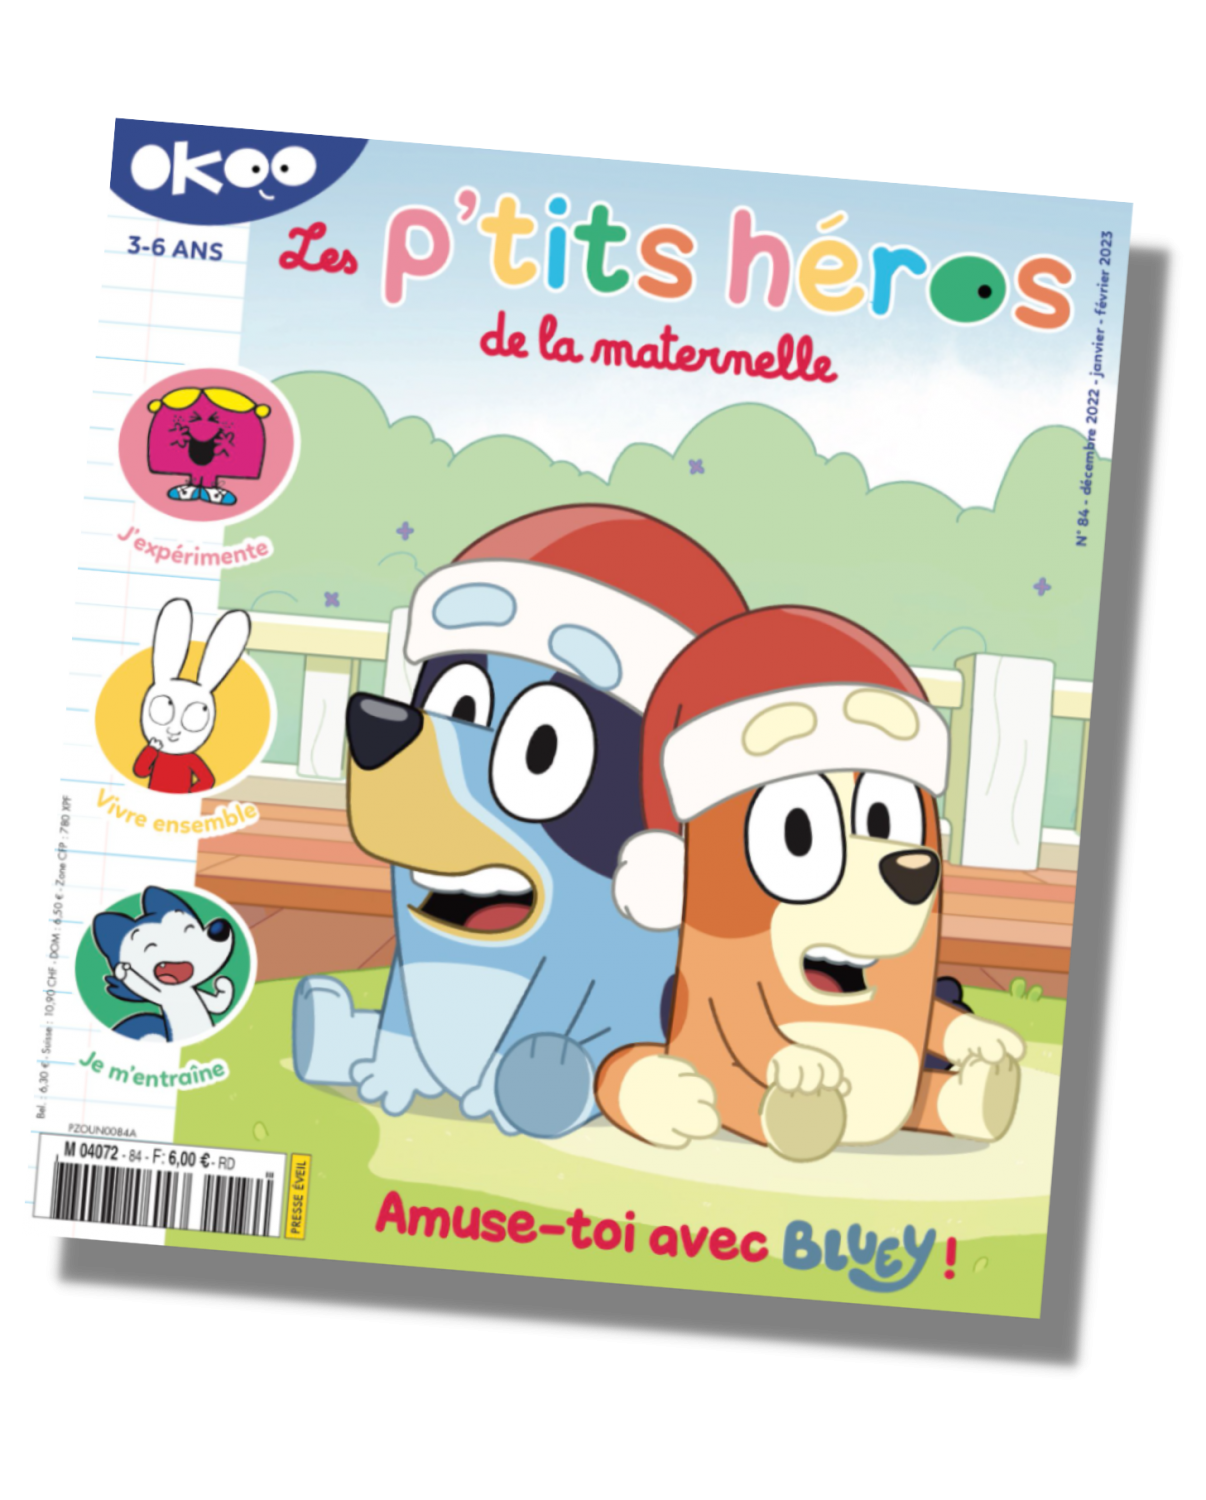 Couverture du magazine trimestriel Okoo, publié par Milan presse. Il s'agit du numéro de décembre 2022 - janvier et février 2023, et met en scène Bluey et sa sœur Bingo.